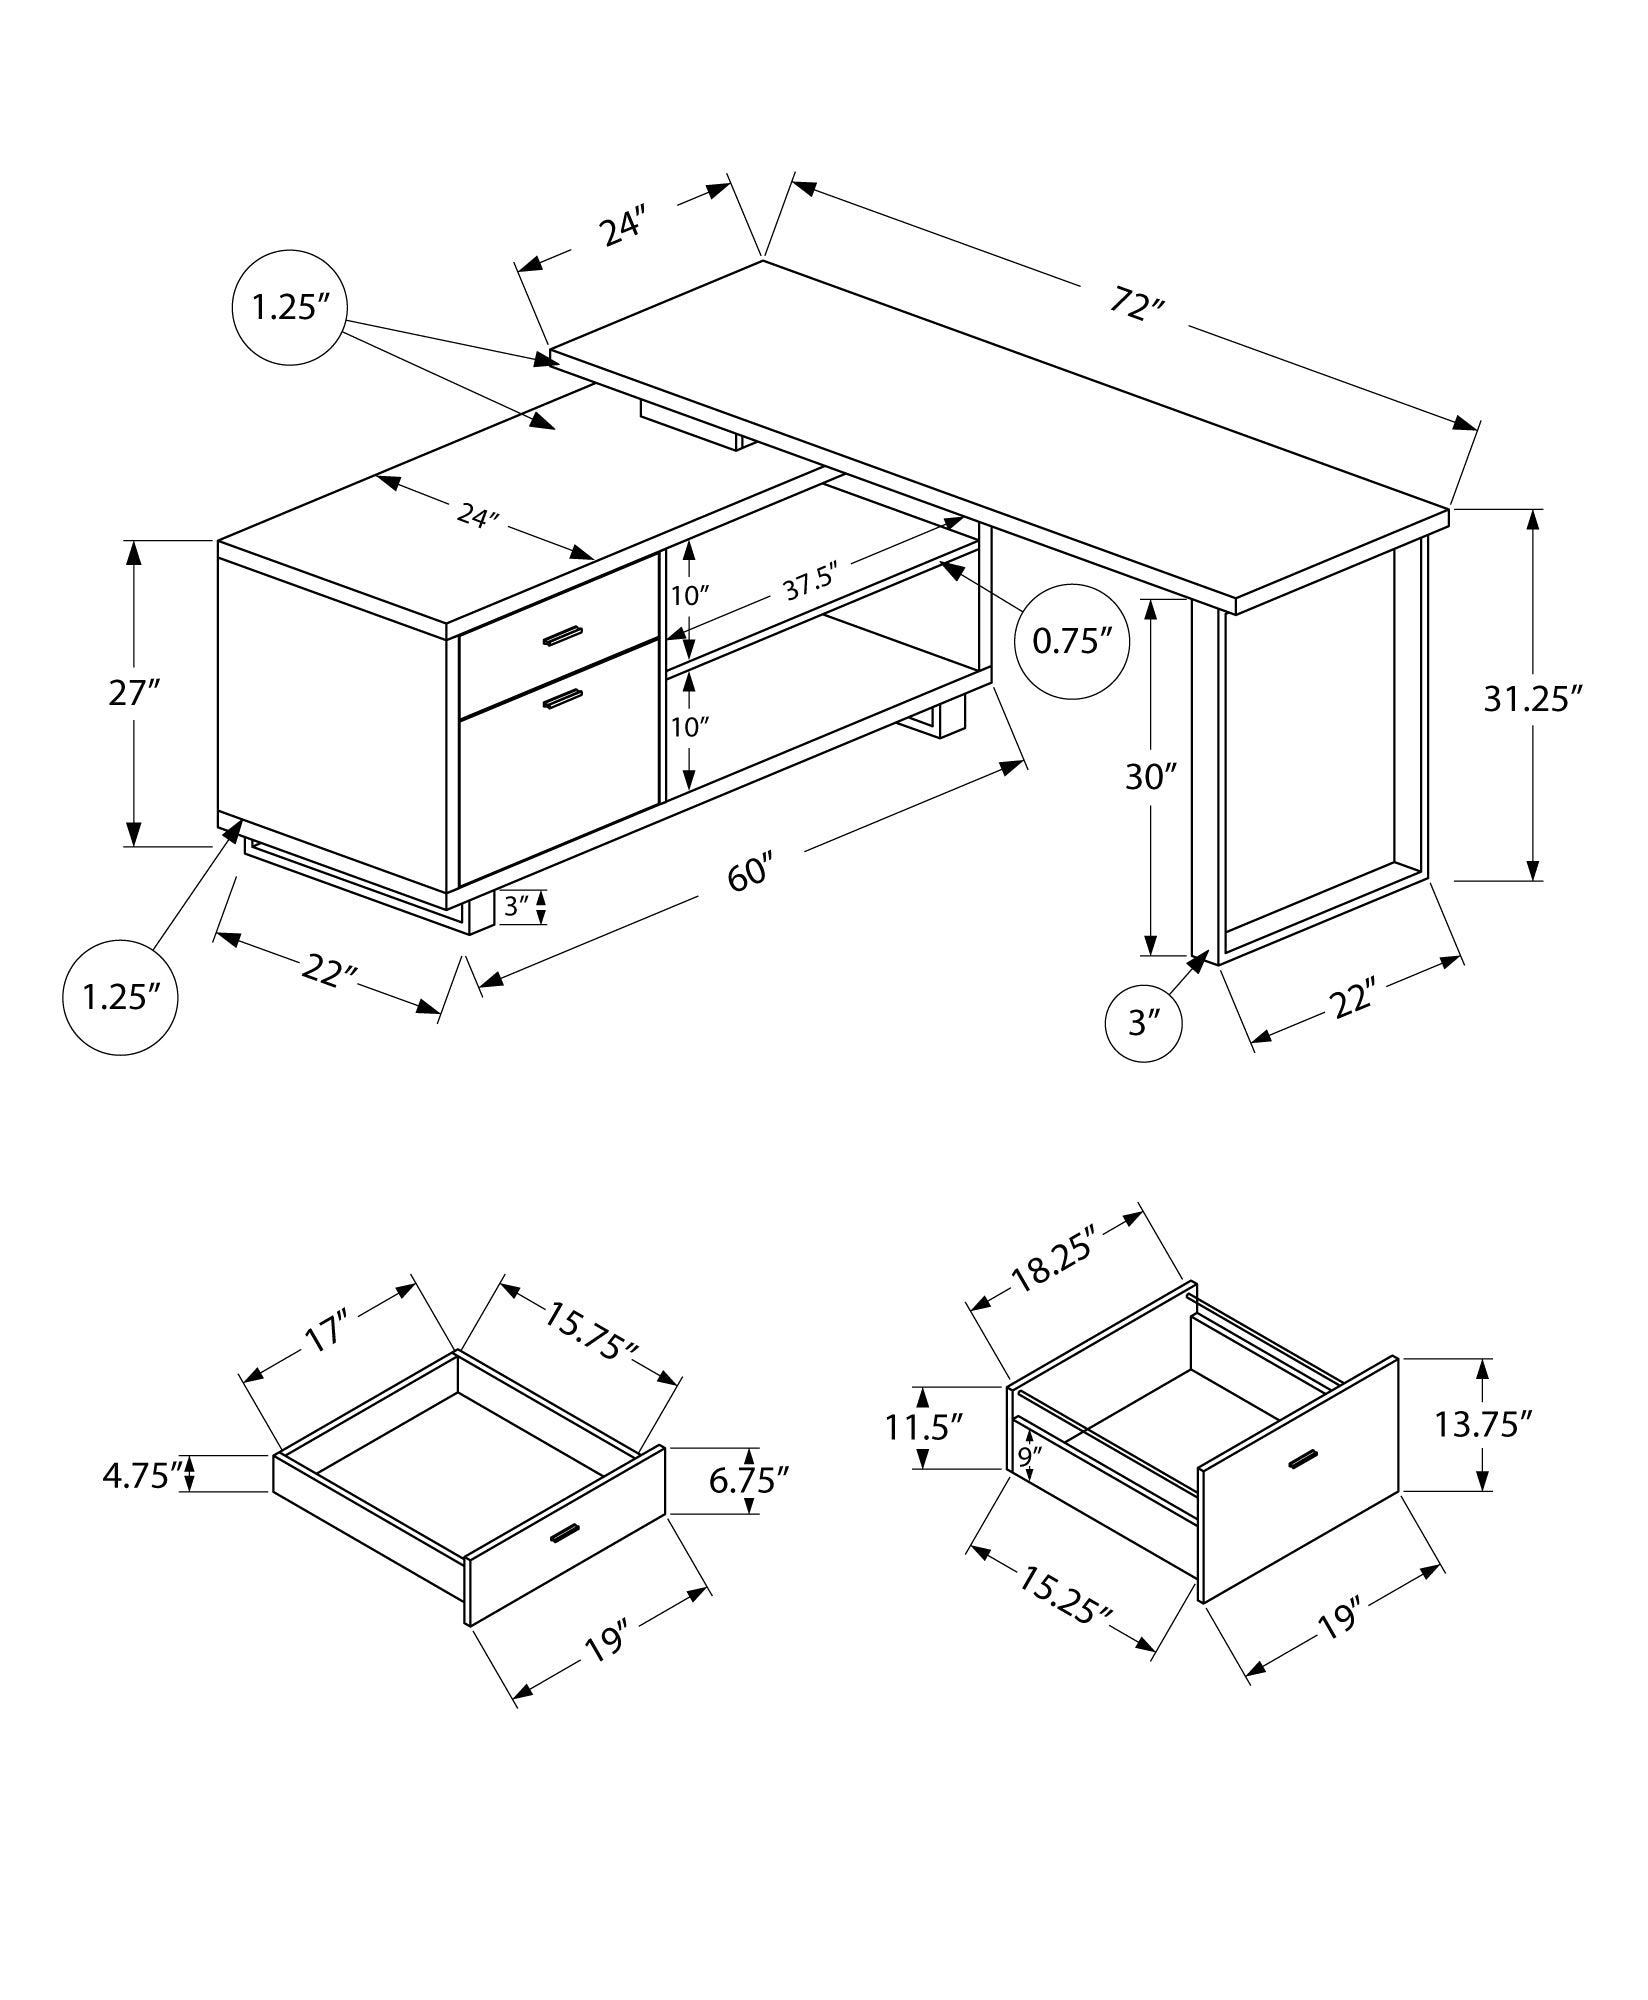 MN-887711    Computer Desk - L-Shaped / Corner / 2 Drawers / Metal Legs / Reversible - 72"L X 60"W - Walnut / Black